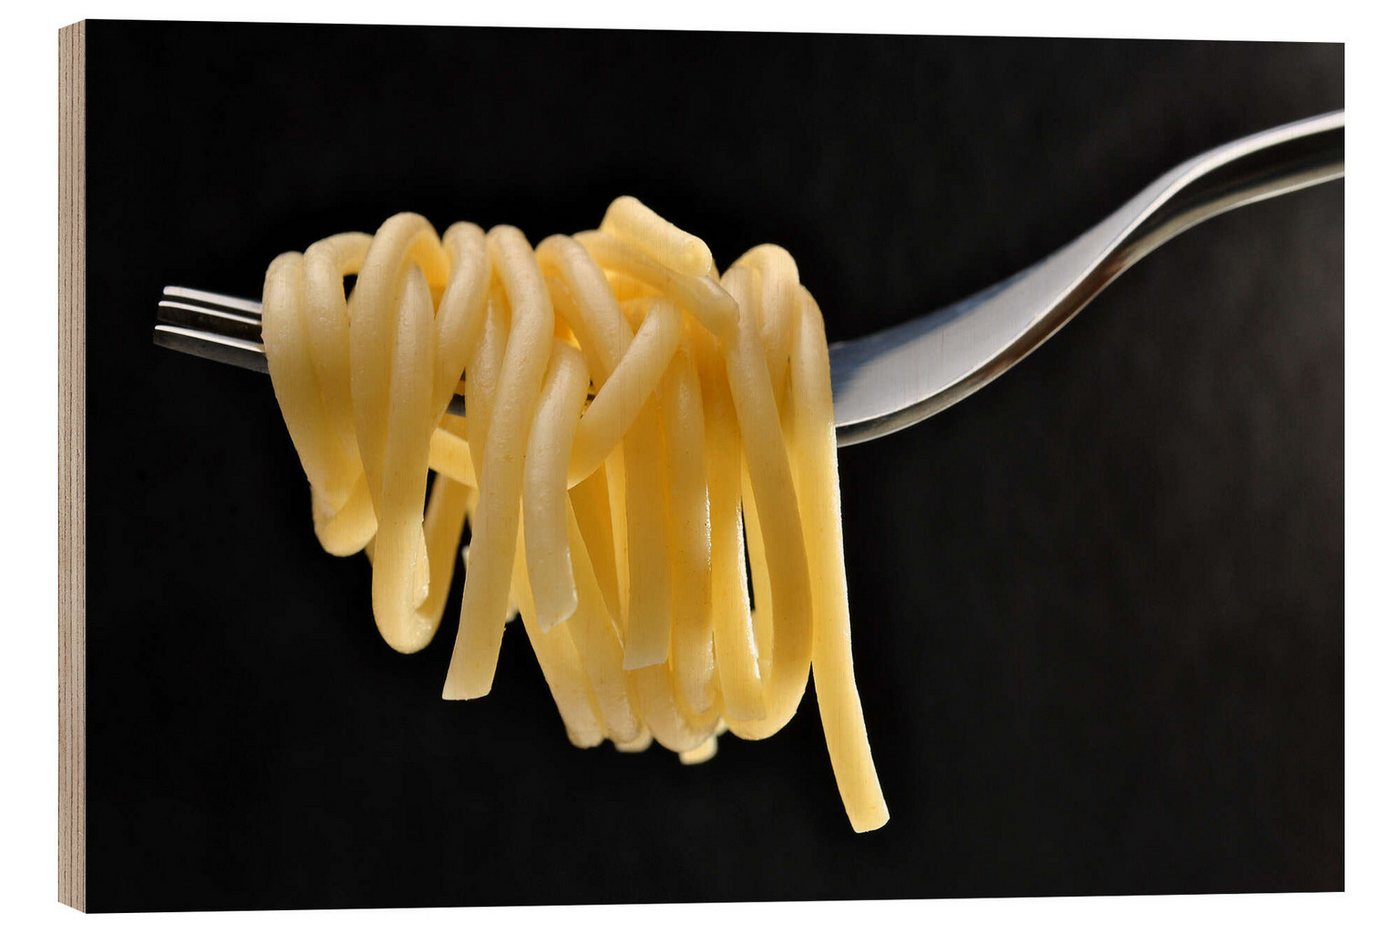 Posterlounge Holzbild Editors Choice, Spaghetti auf einer Gabel, Fotografie von Posterlounge